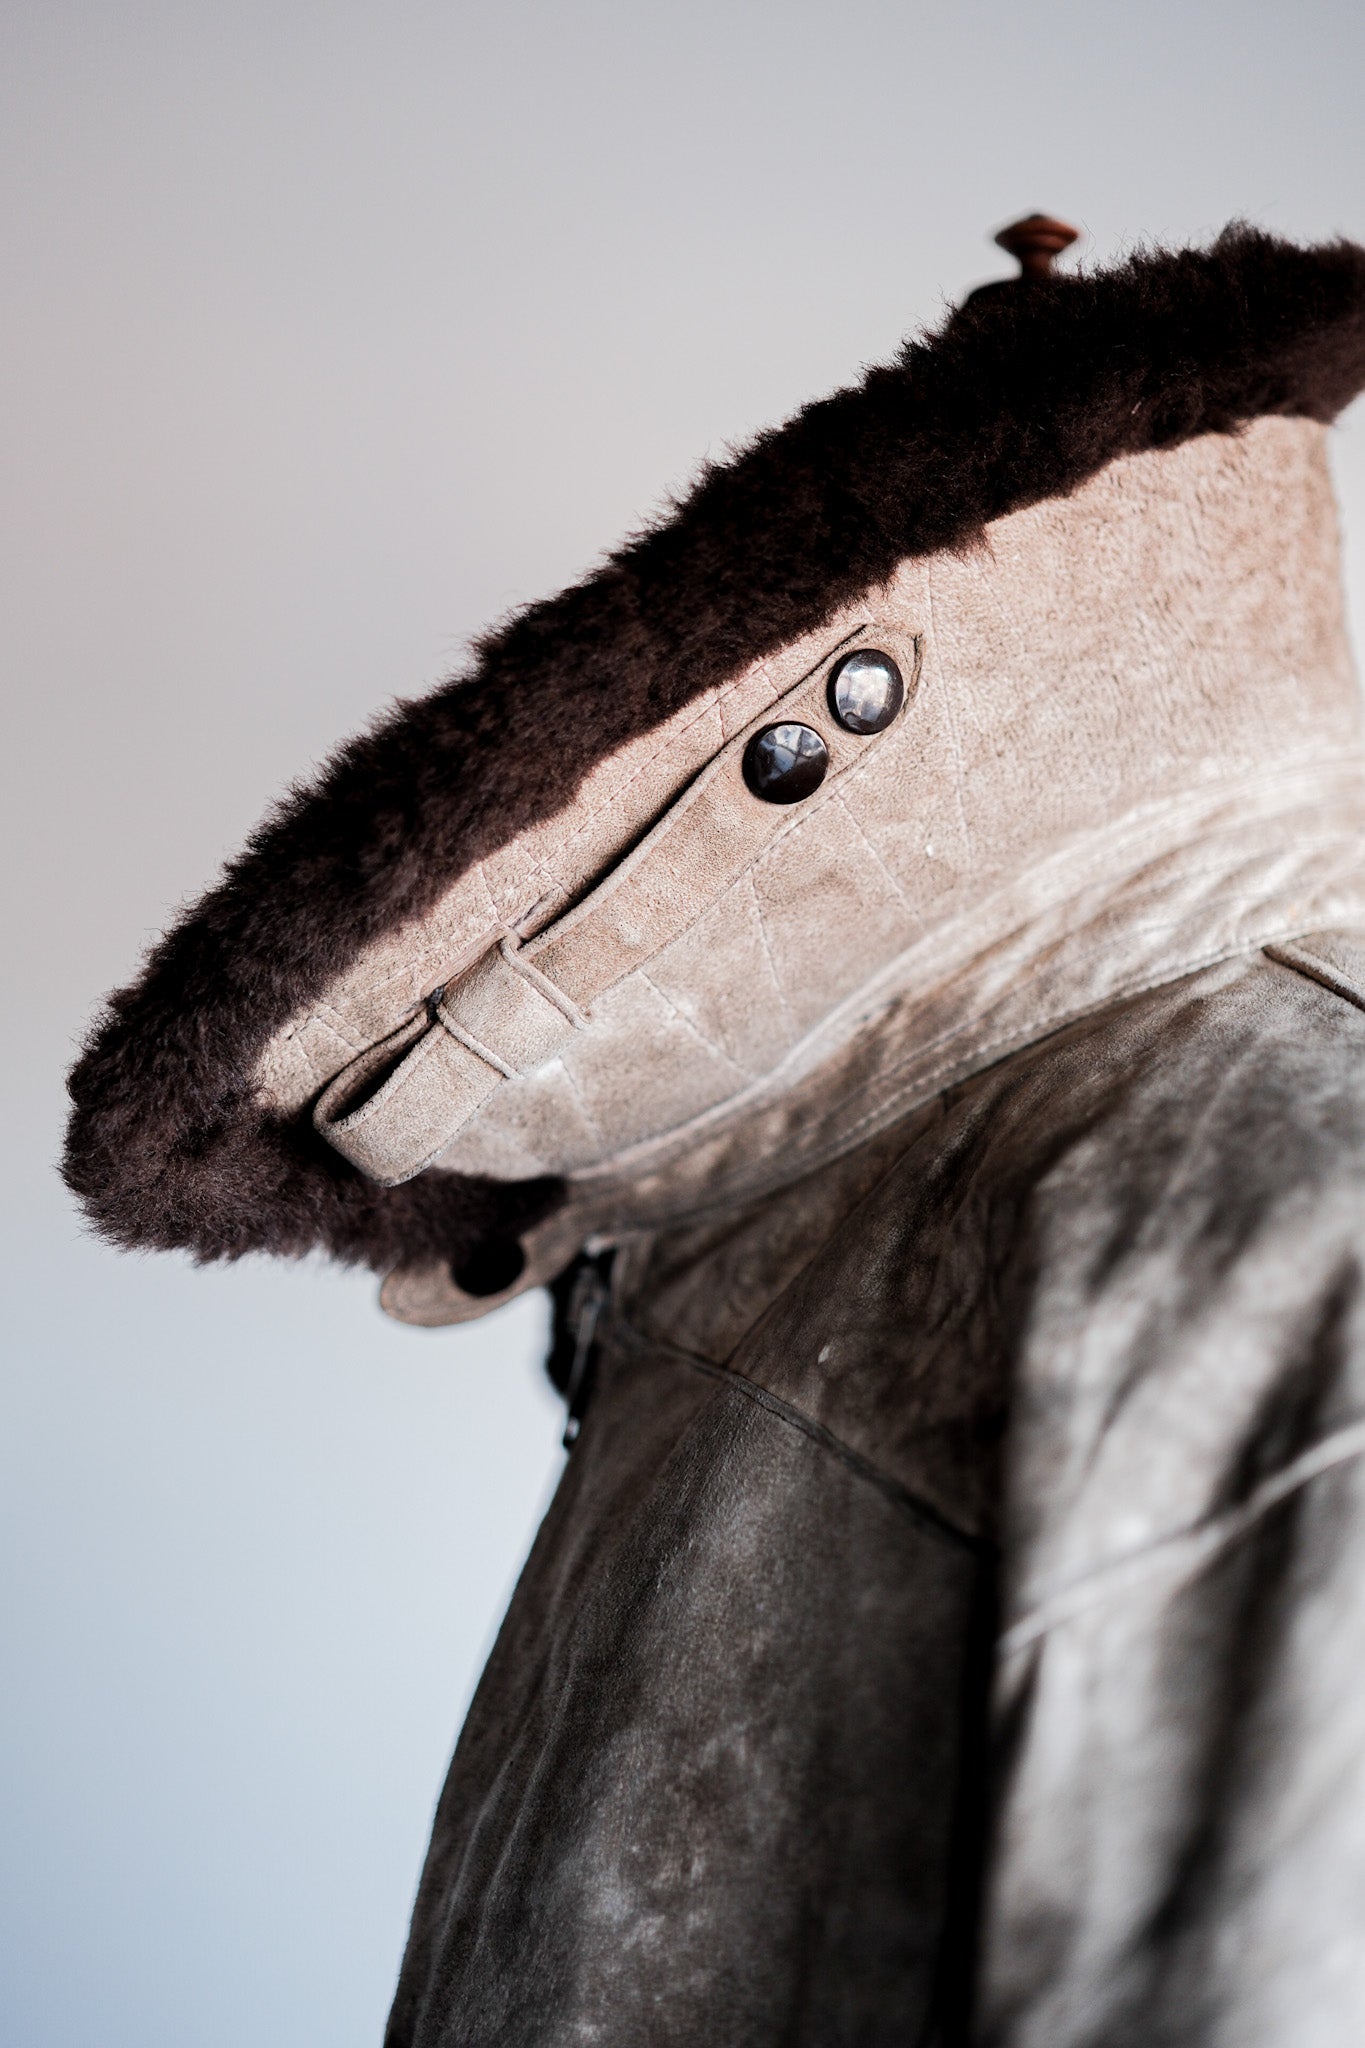 [〜40年代]wwⅱ德國空軍冬季羊皮飛行夾克“ Lufftwaffe”“不尋常的口袋”